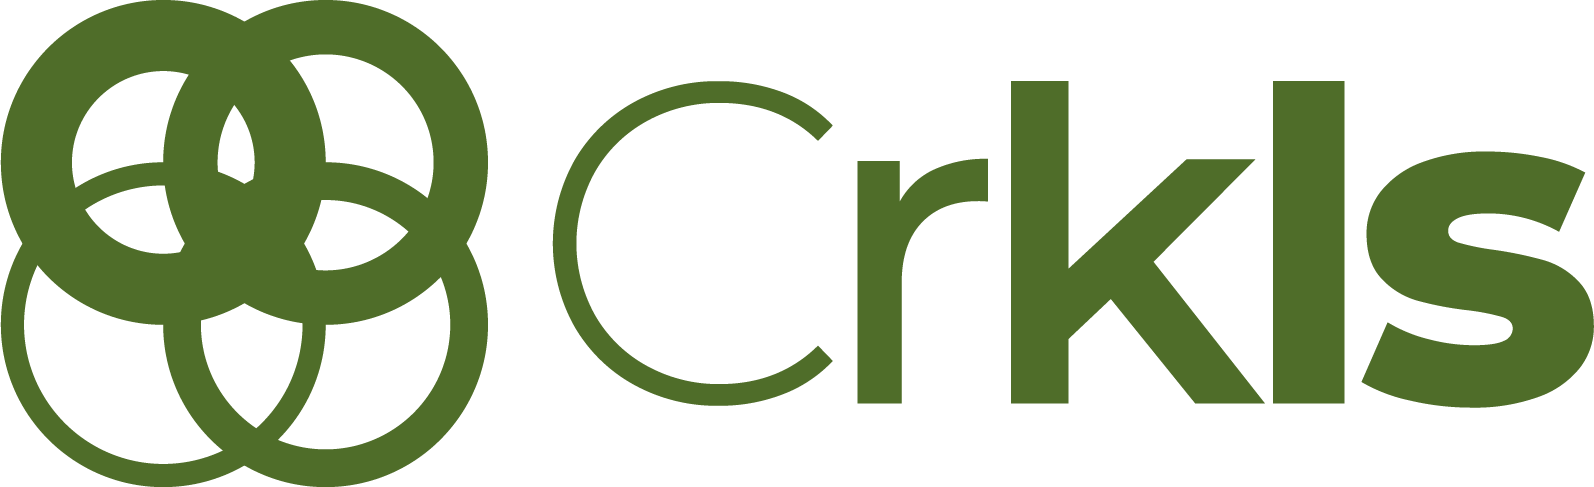 crkls-logo-001-groen